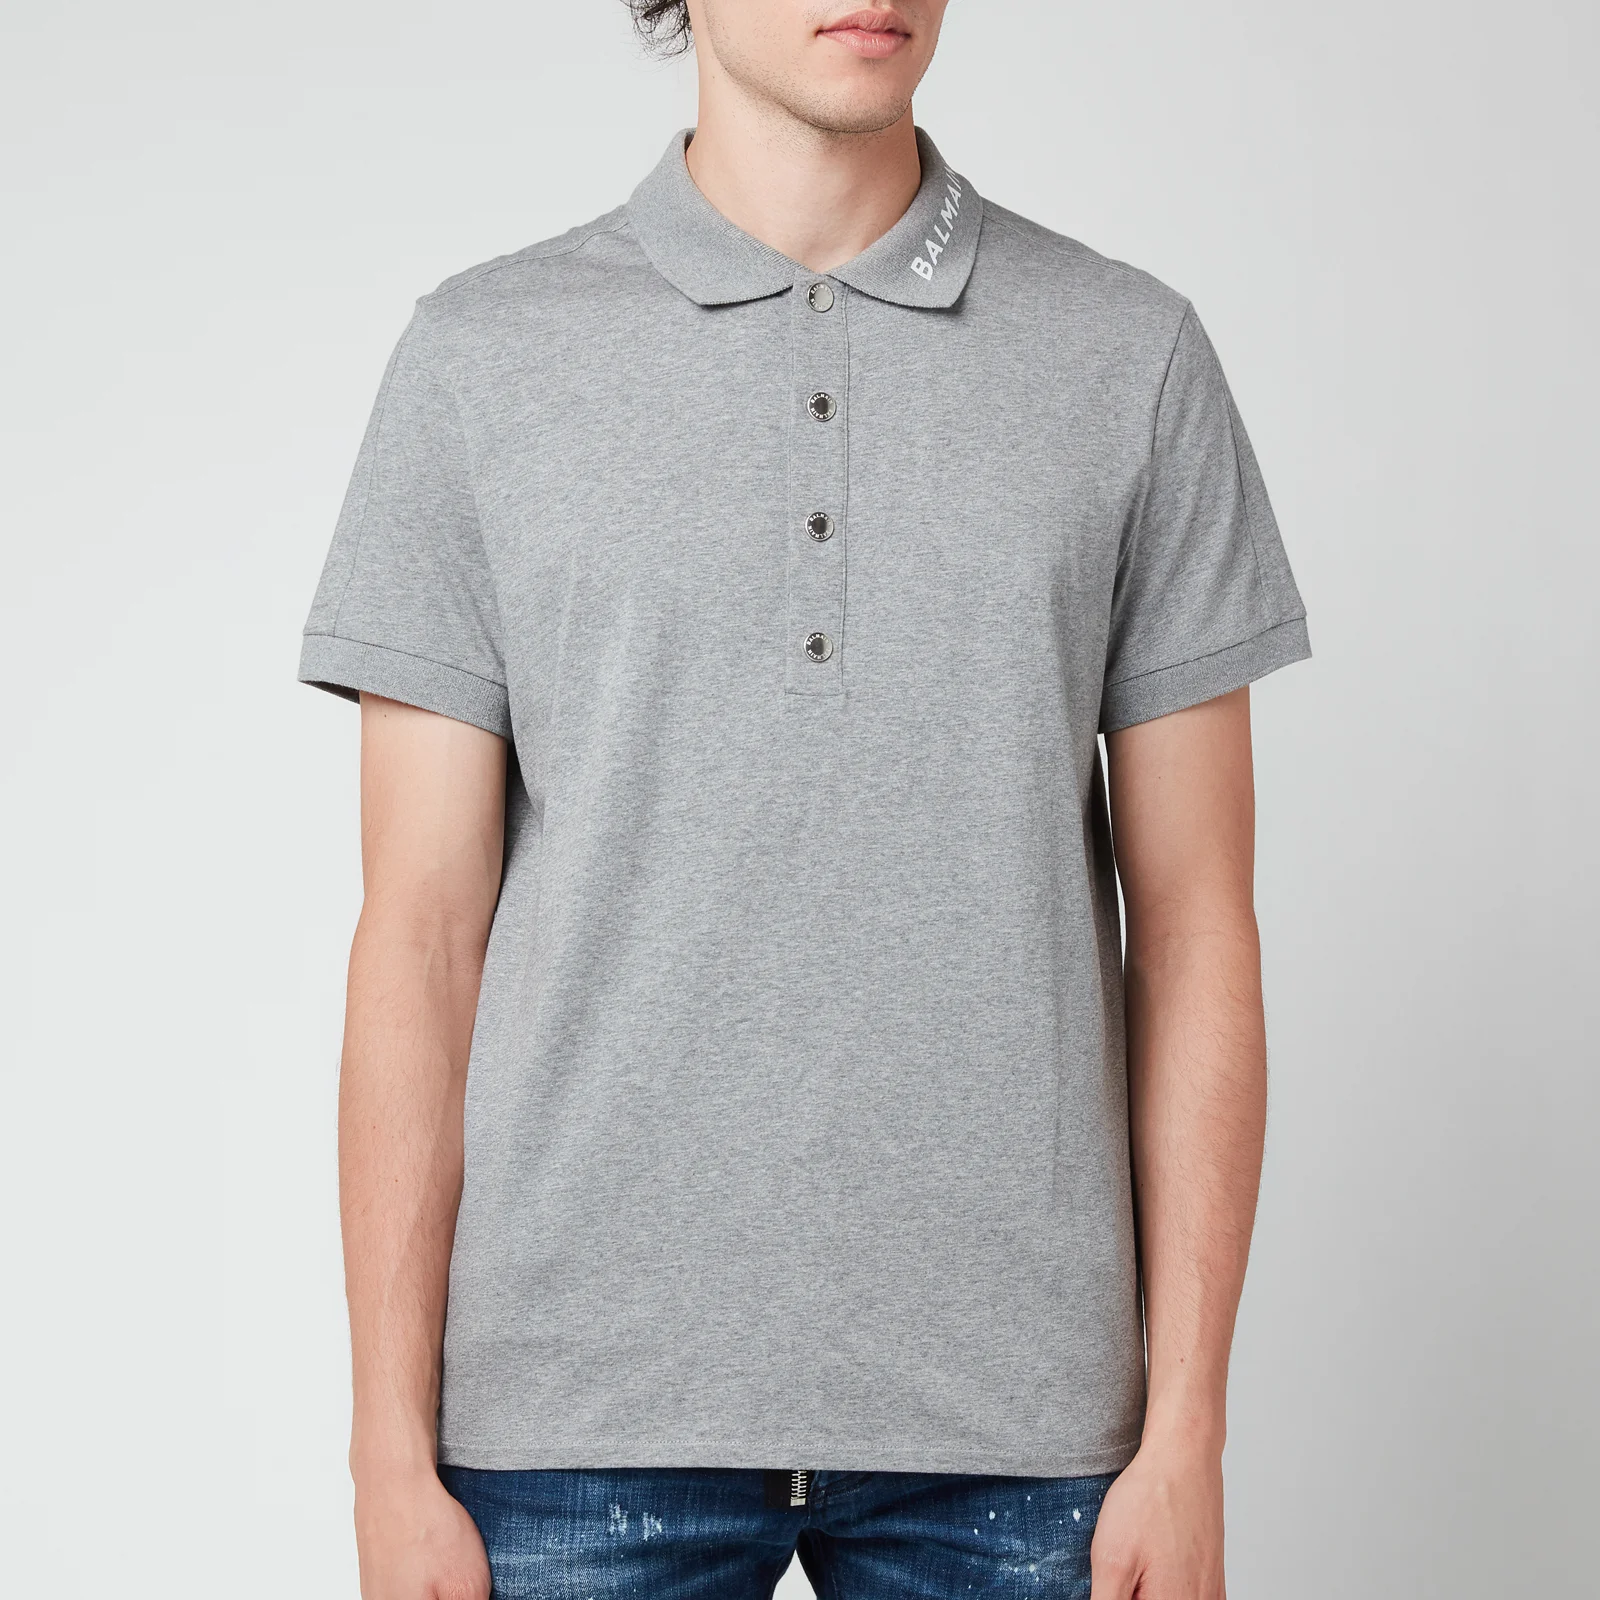 Balmain Men's Printed Collar Polo Shirt - Grey/White Image 1